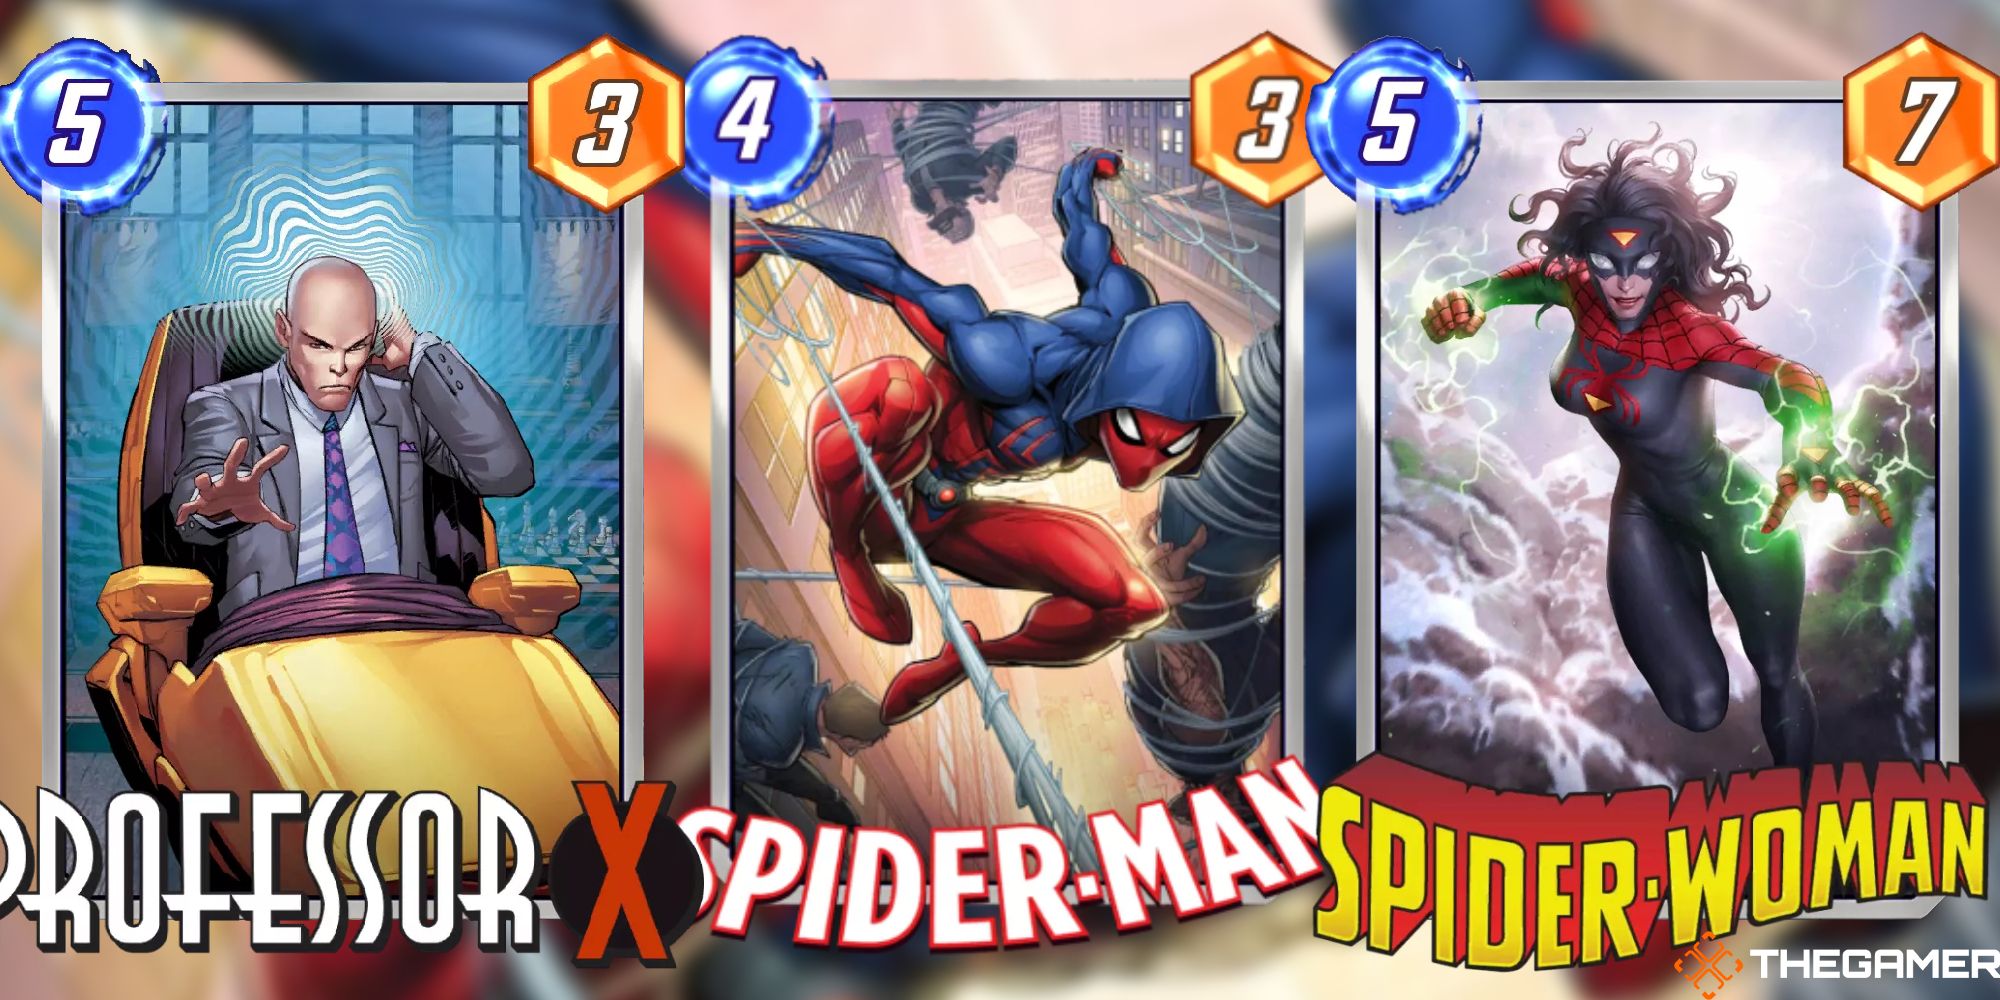 Marvel Snap Spiderman Deck Professor X, Spider-Man, Spider-Woman